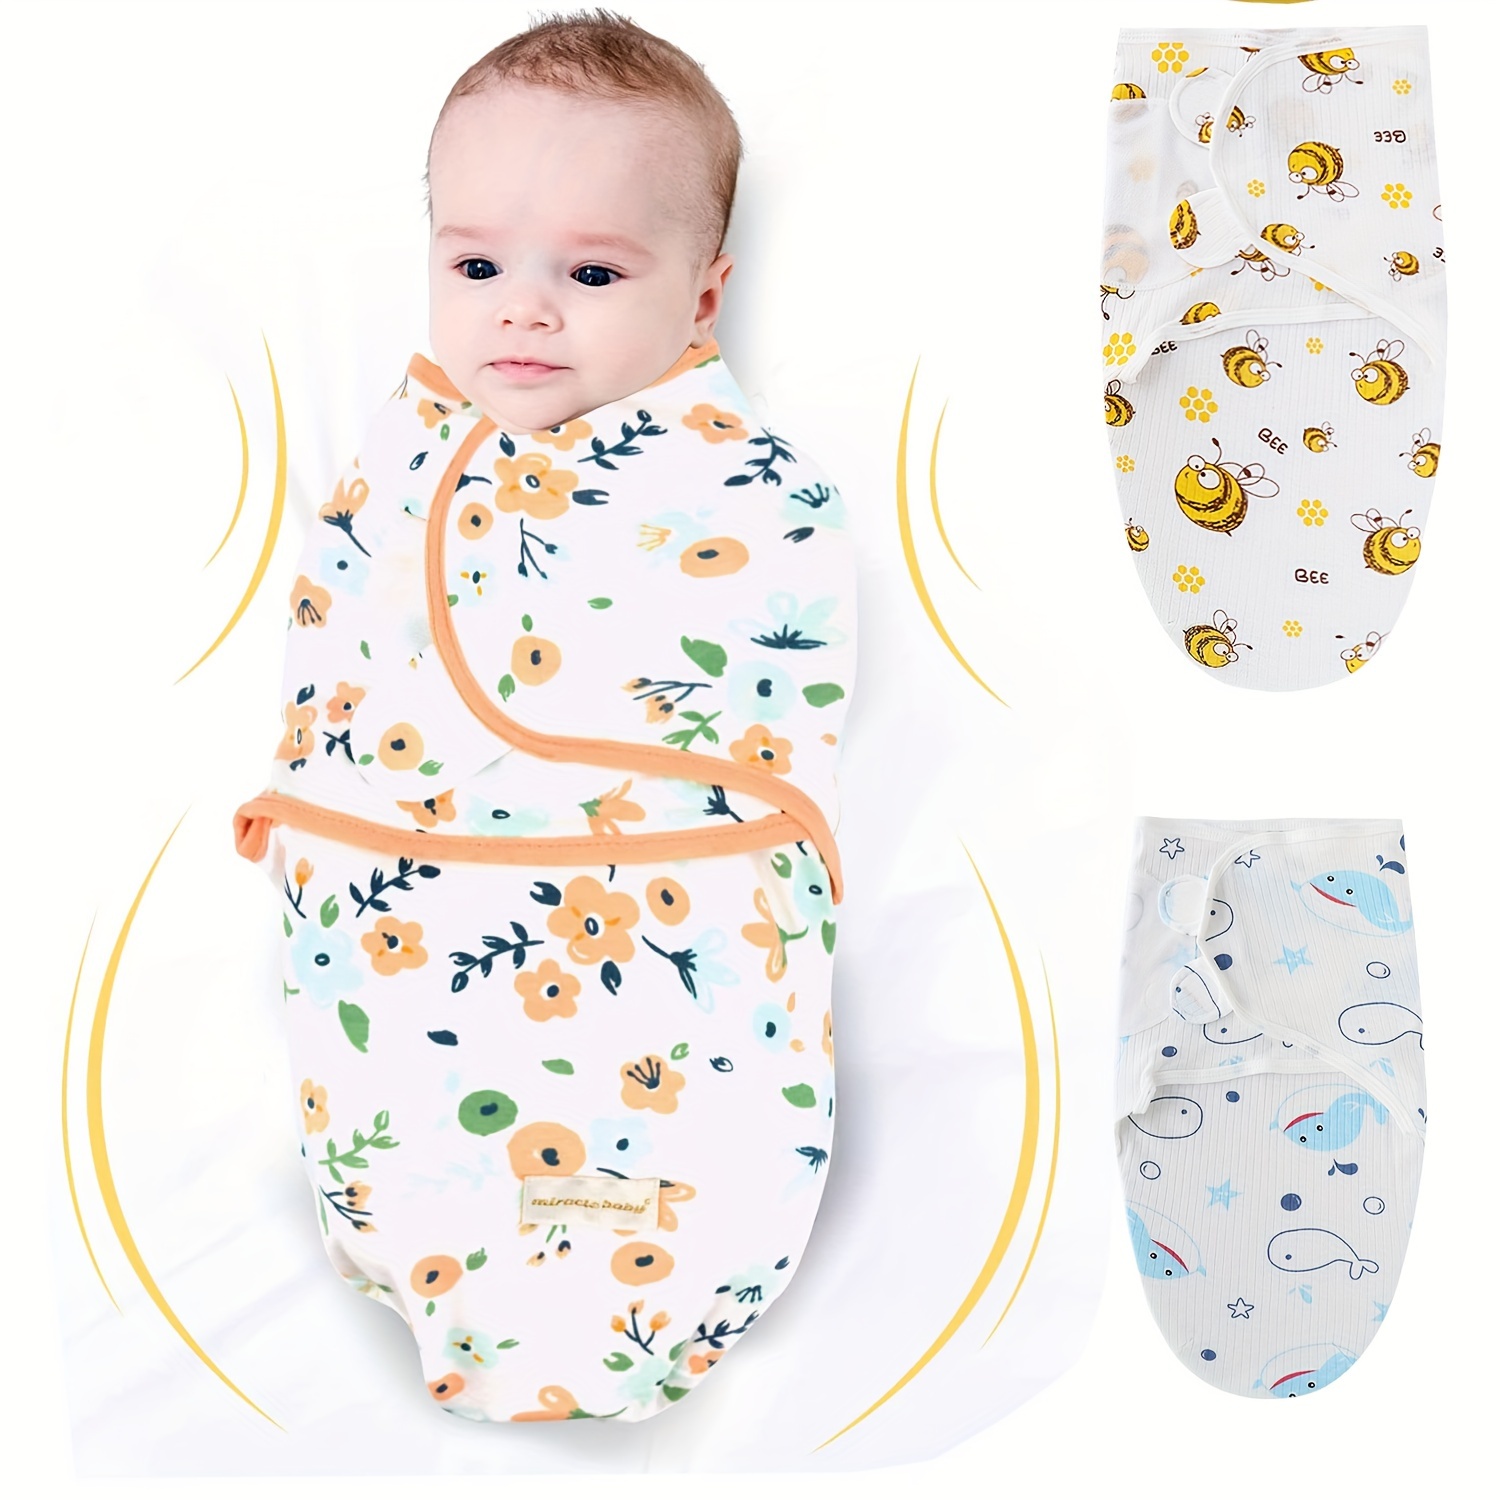 Mantas Pañales - Manta Bebé Saco de dormir para bebé recién nacido, paquete  de 2 pañales ajustables para bebé, manta para pañales para bebé de 0 a 3  meses, 7 a 14